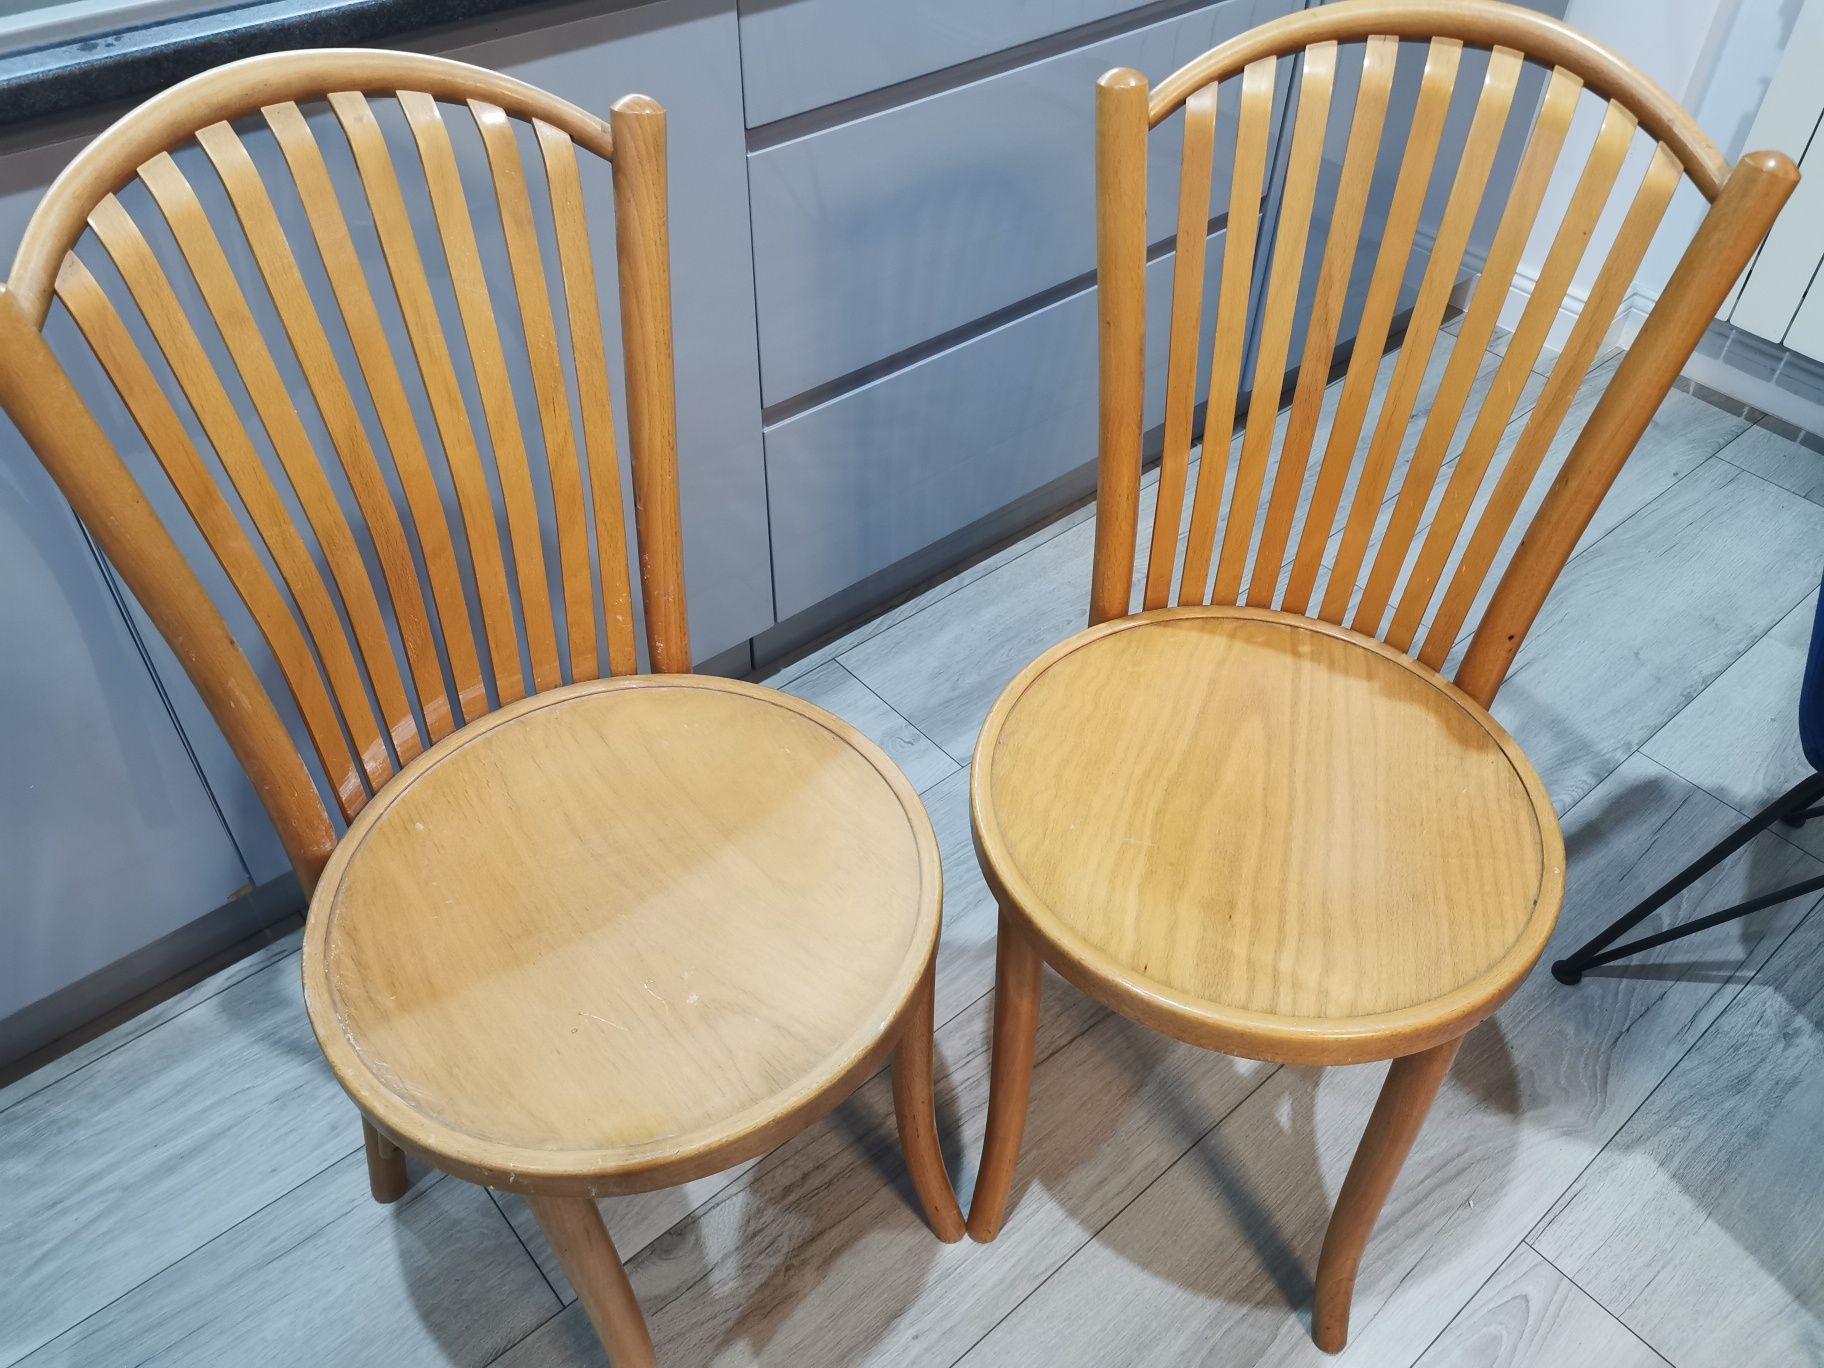 Drewniane krzesła 2 sztuki dobry stan cena za jedno krzesło